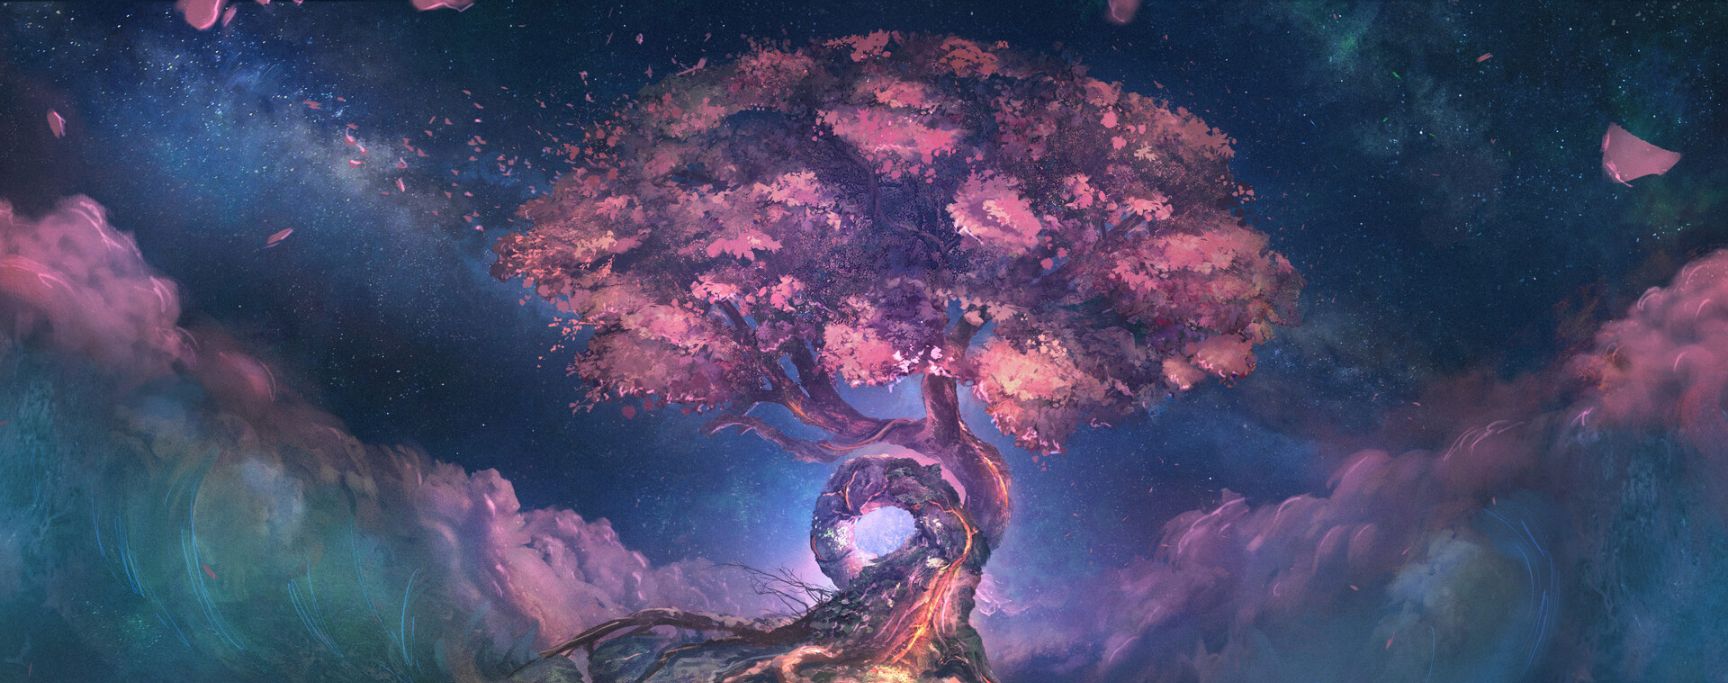 yggdrasil arbre de vie